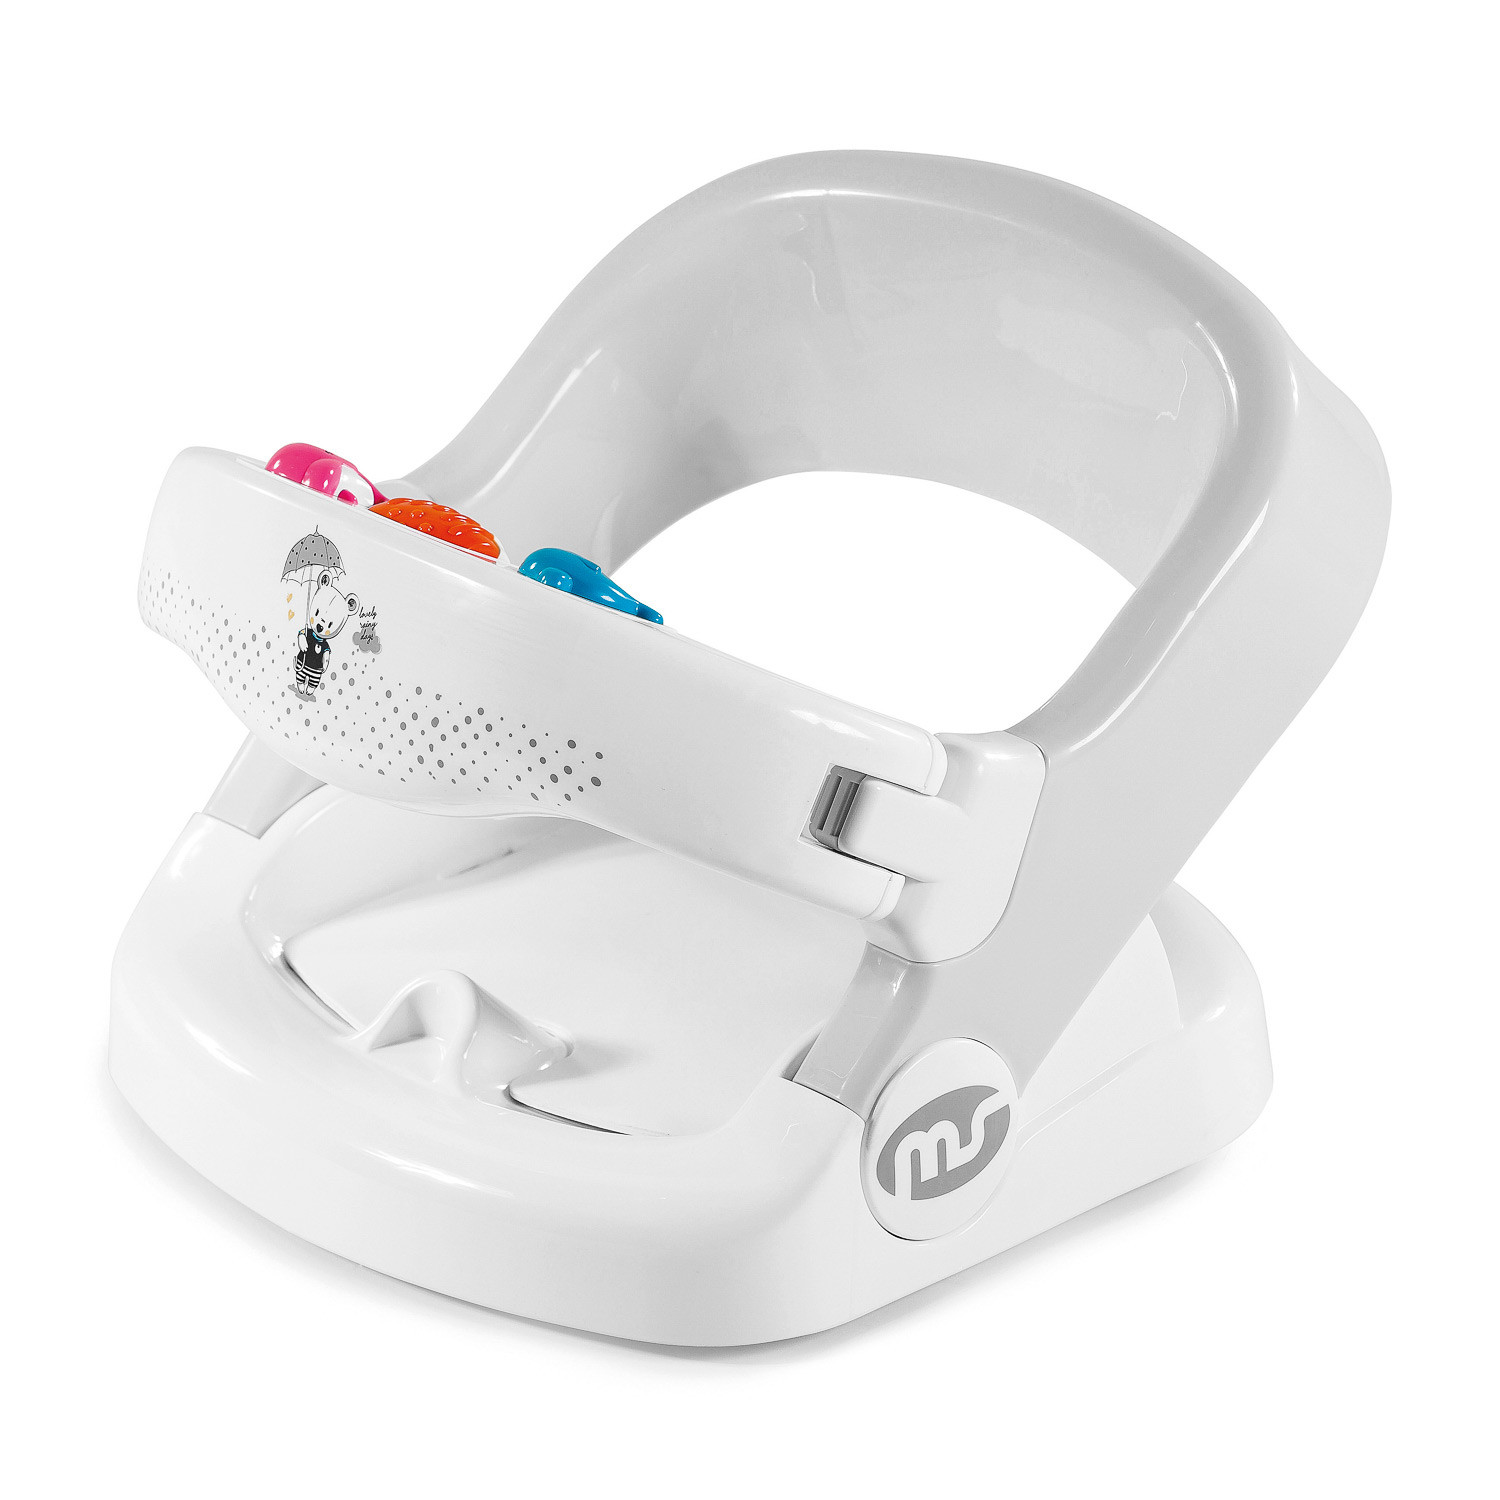  BabyBond Asiento de baño para bebé con 2 modos, ajuste de 3  velocidades, potentes ventosas, silla de bañera infantil con almohada de  silicona lavable, plegable y colgante (gris) : Bebés